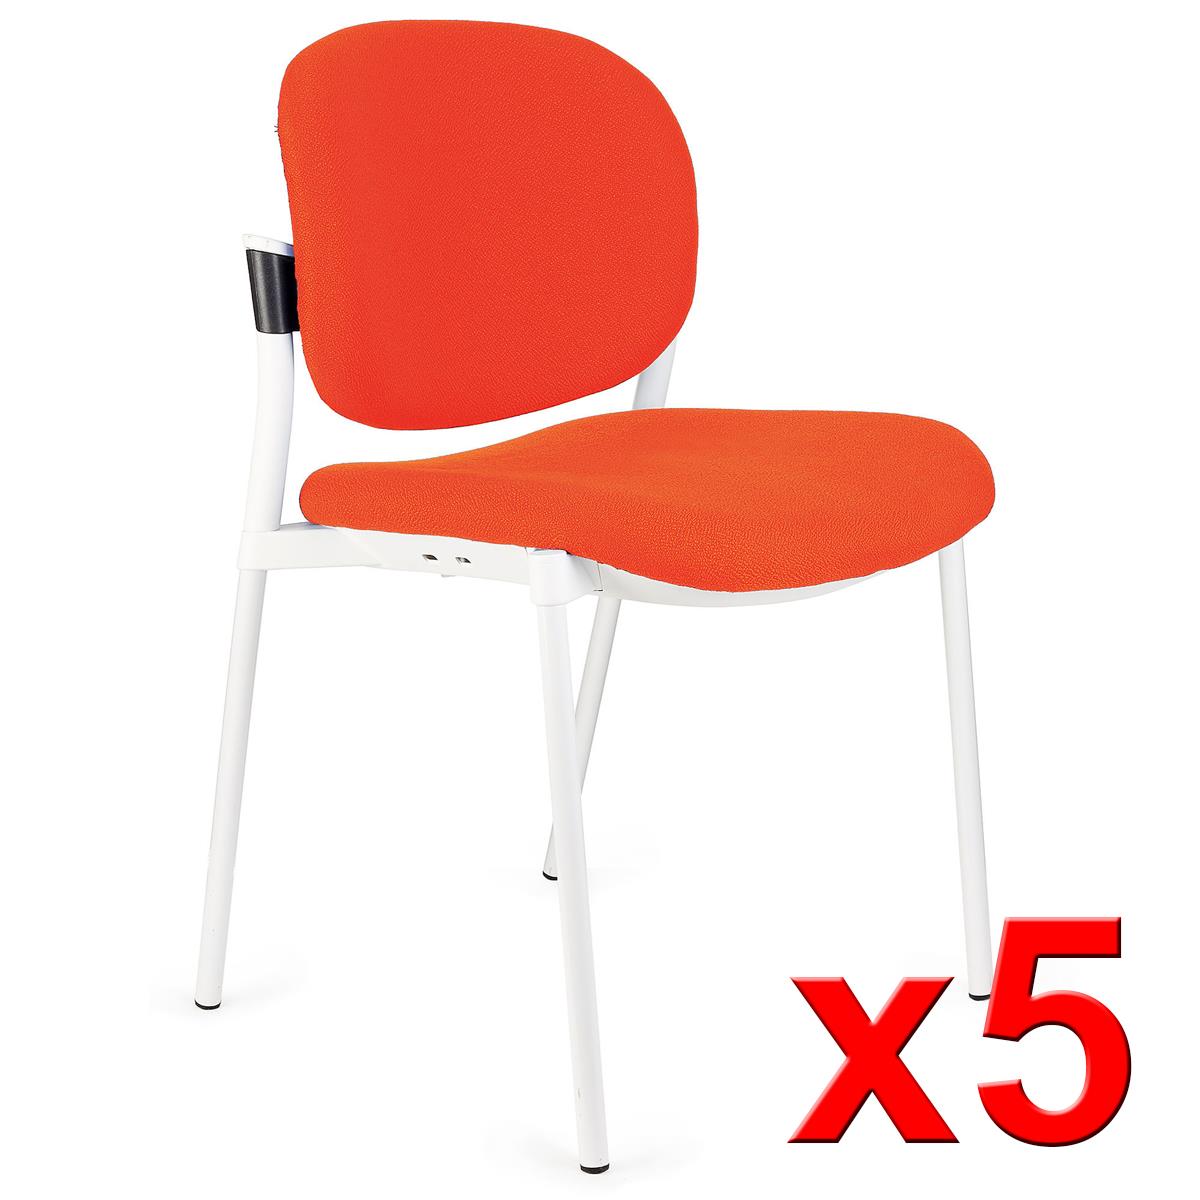 Lote de 5 sillas de Confidente ERIC RESPALDO ACOLCHADO, Cómodas y Prácticas, Apilables, Color Naranja